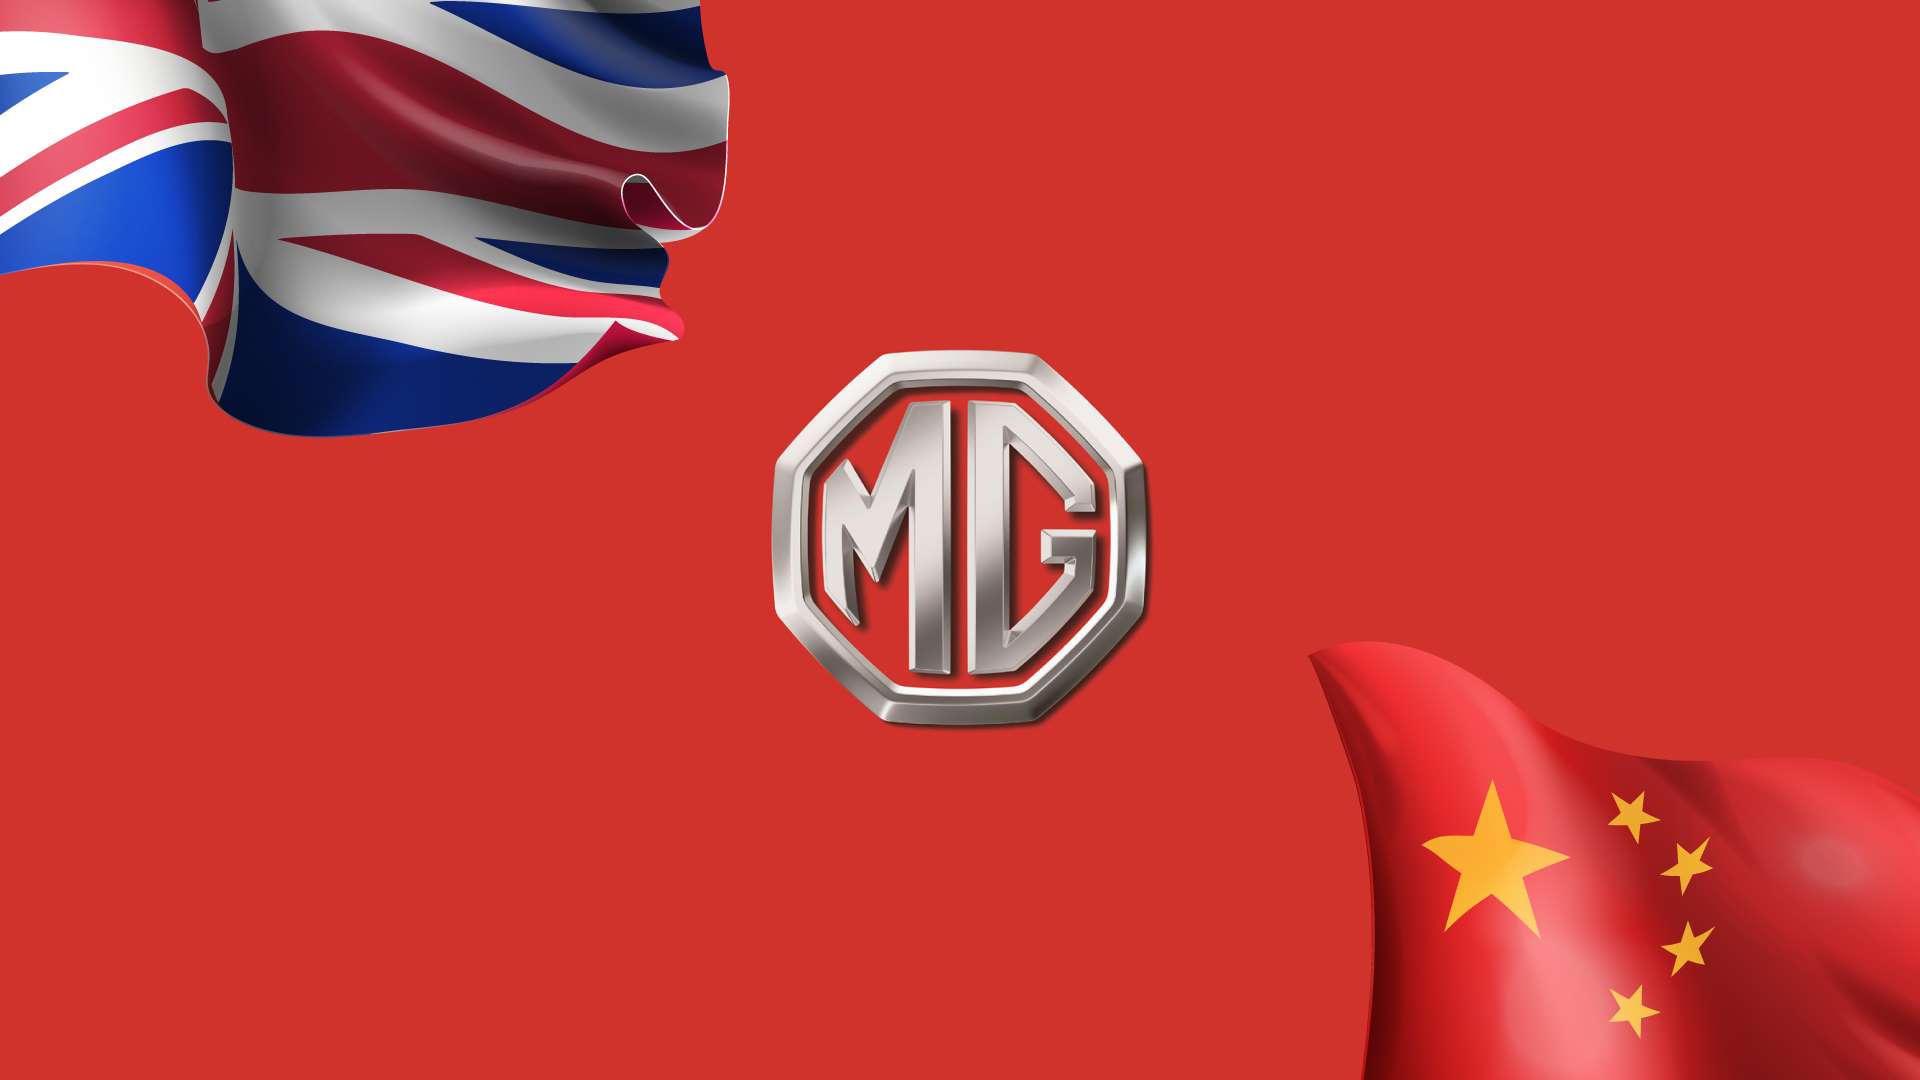 MG-England-China.jpg